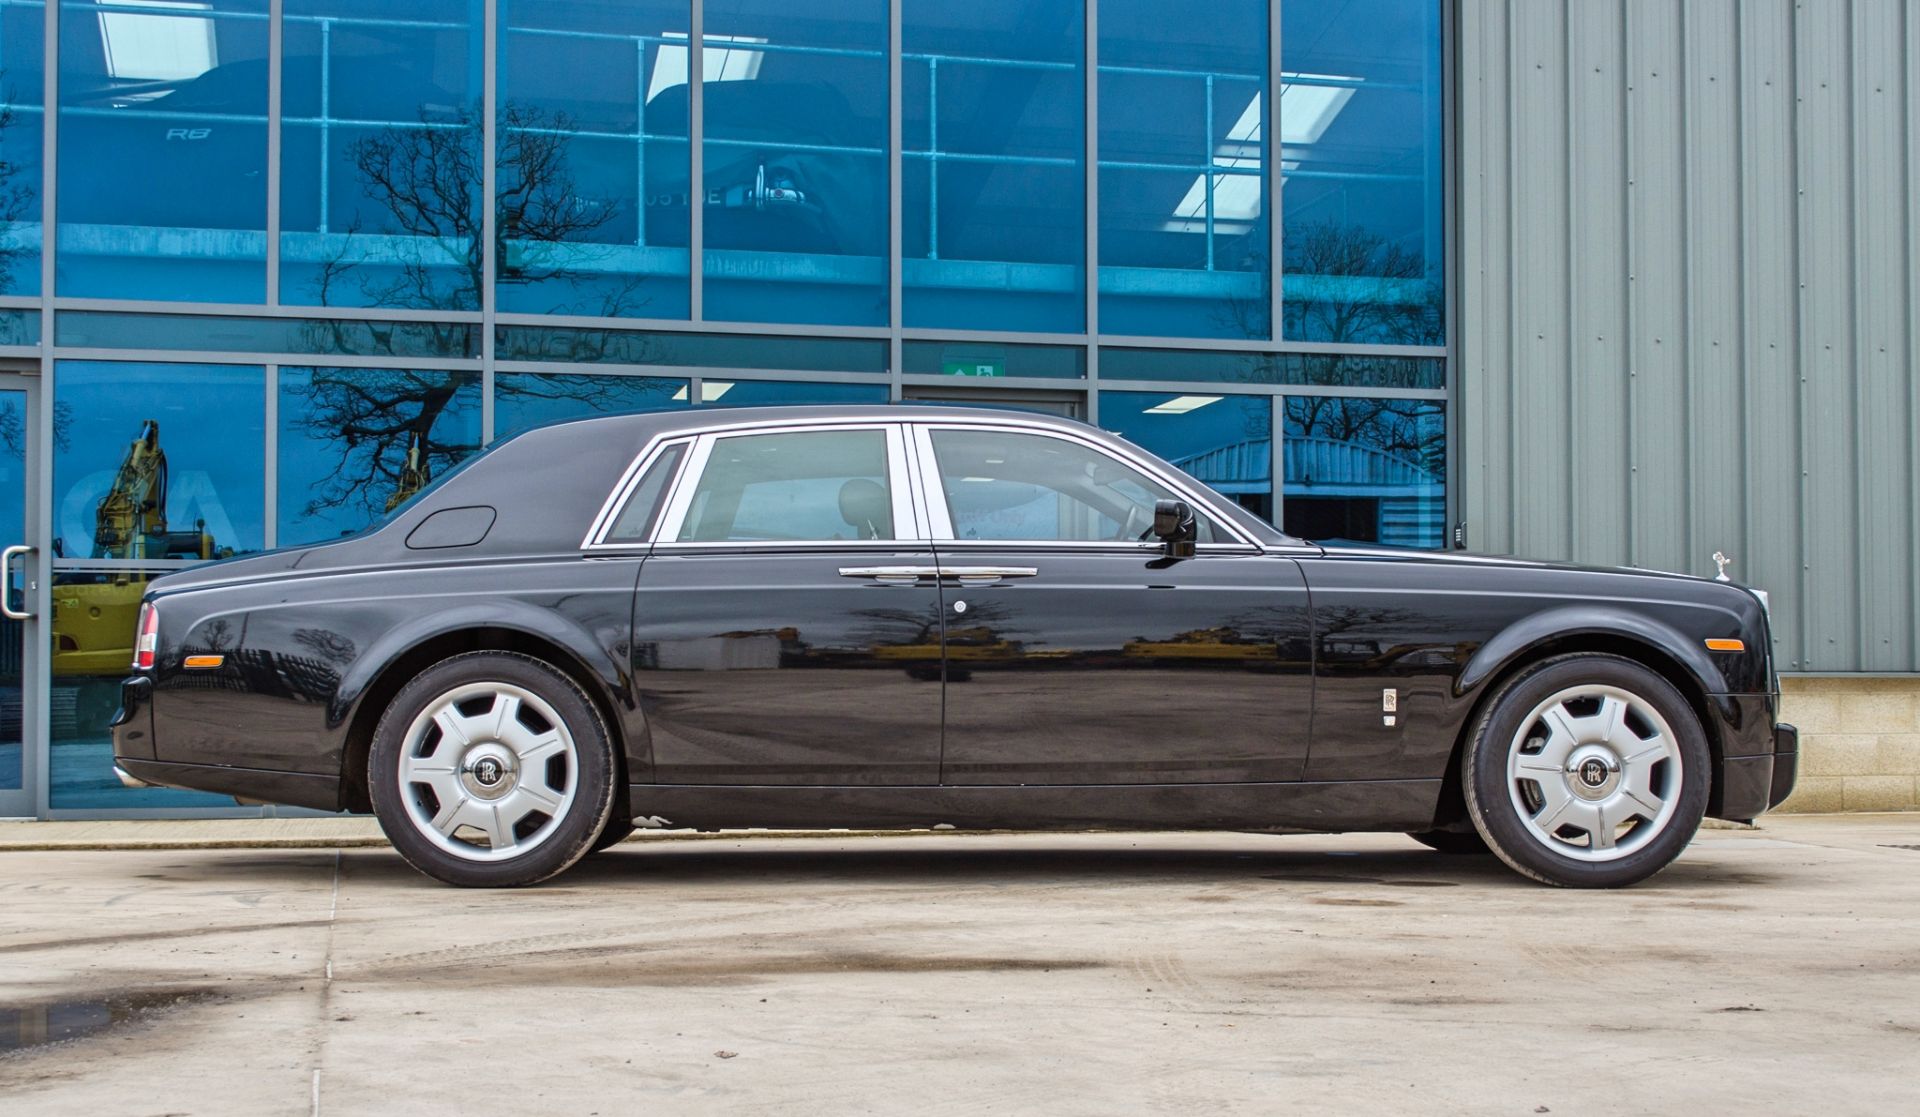 2008 Rolls Royce Phantom 6.75 litre V12 4 door saloon - Image 13 of 60